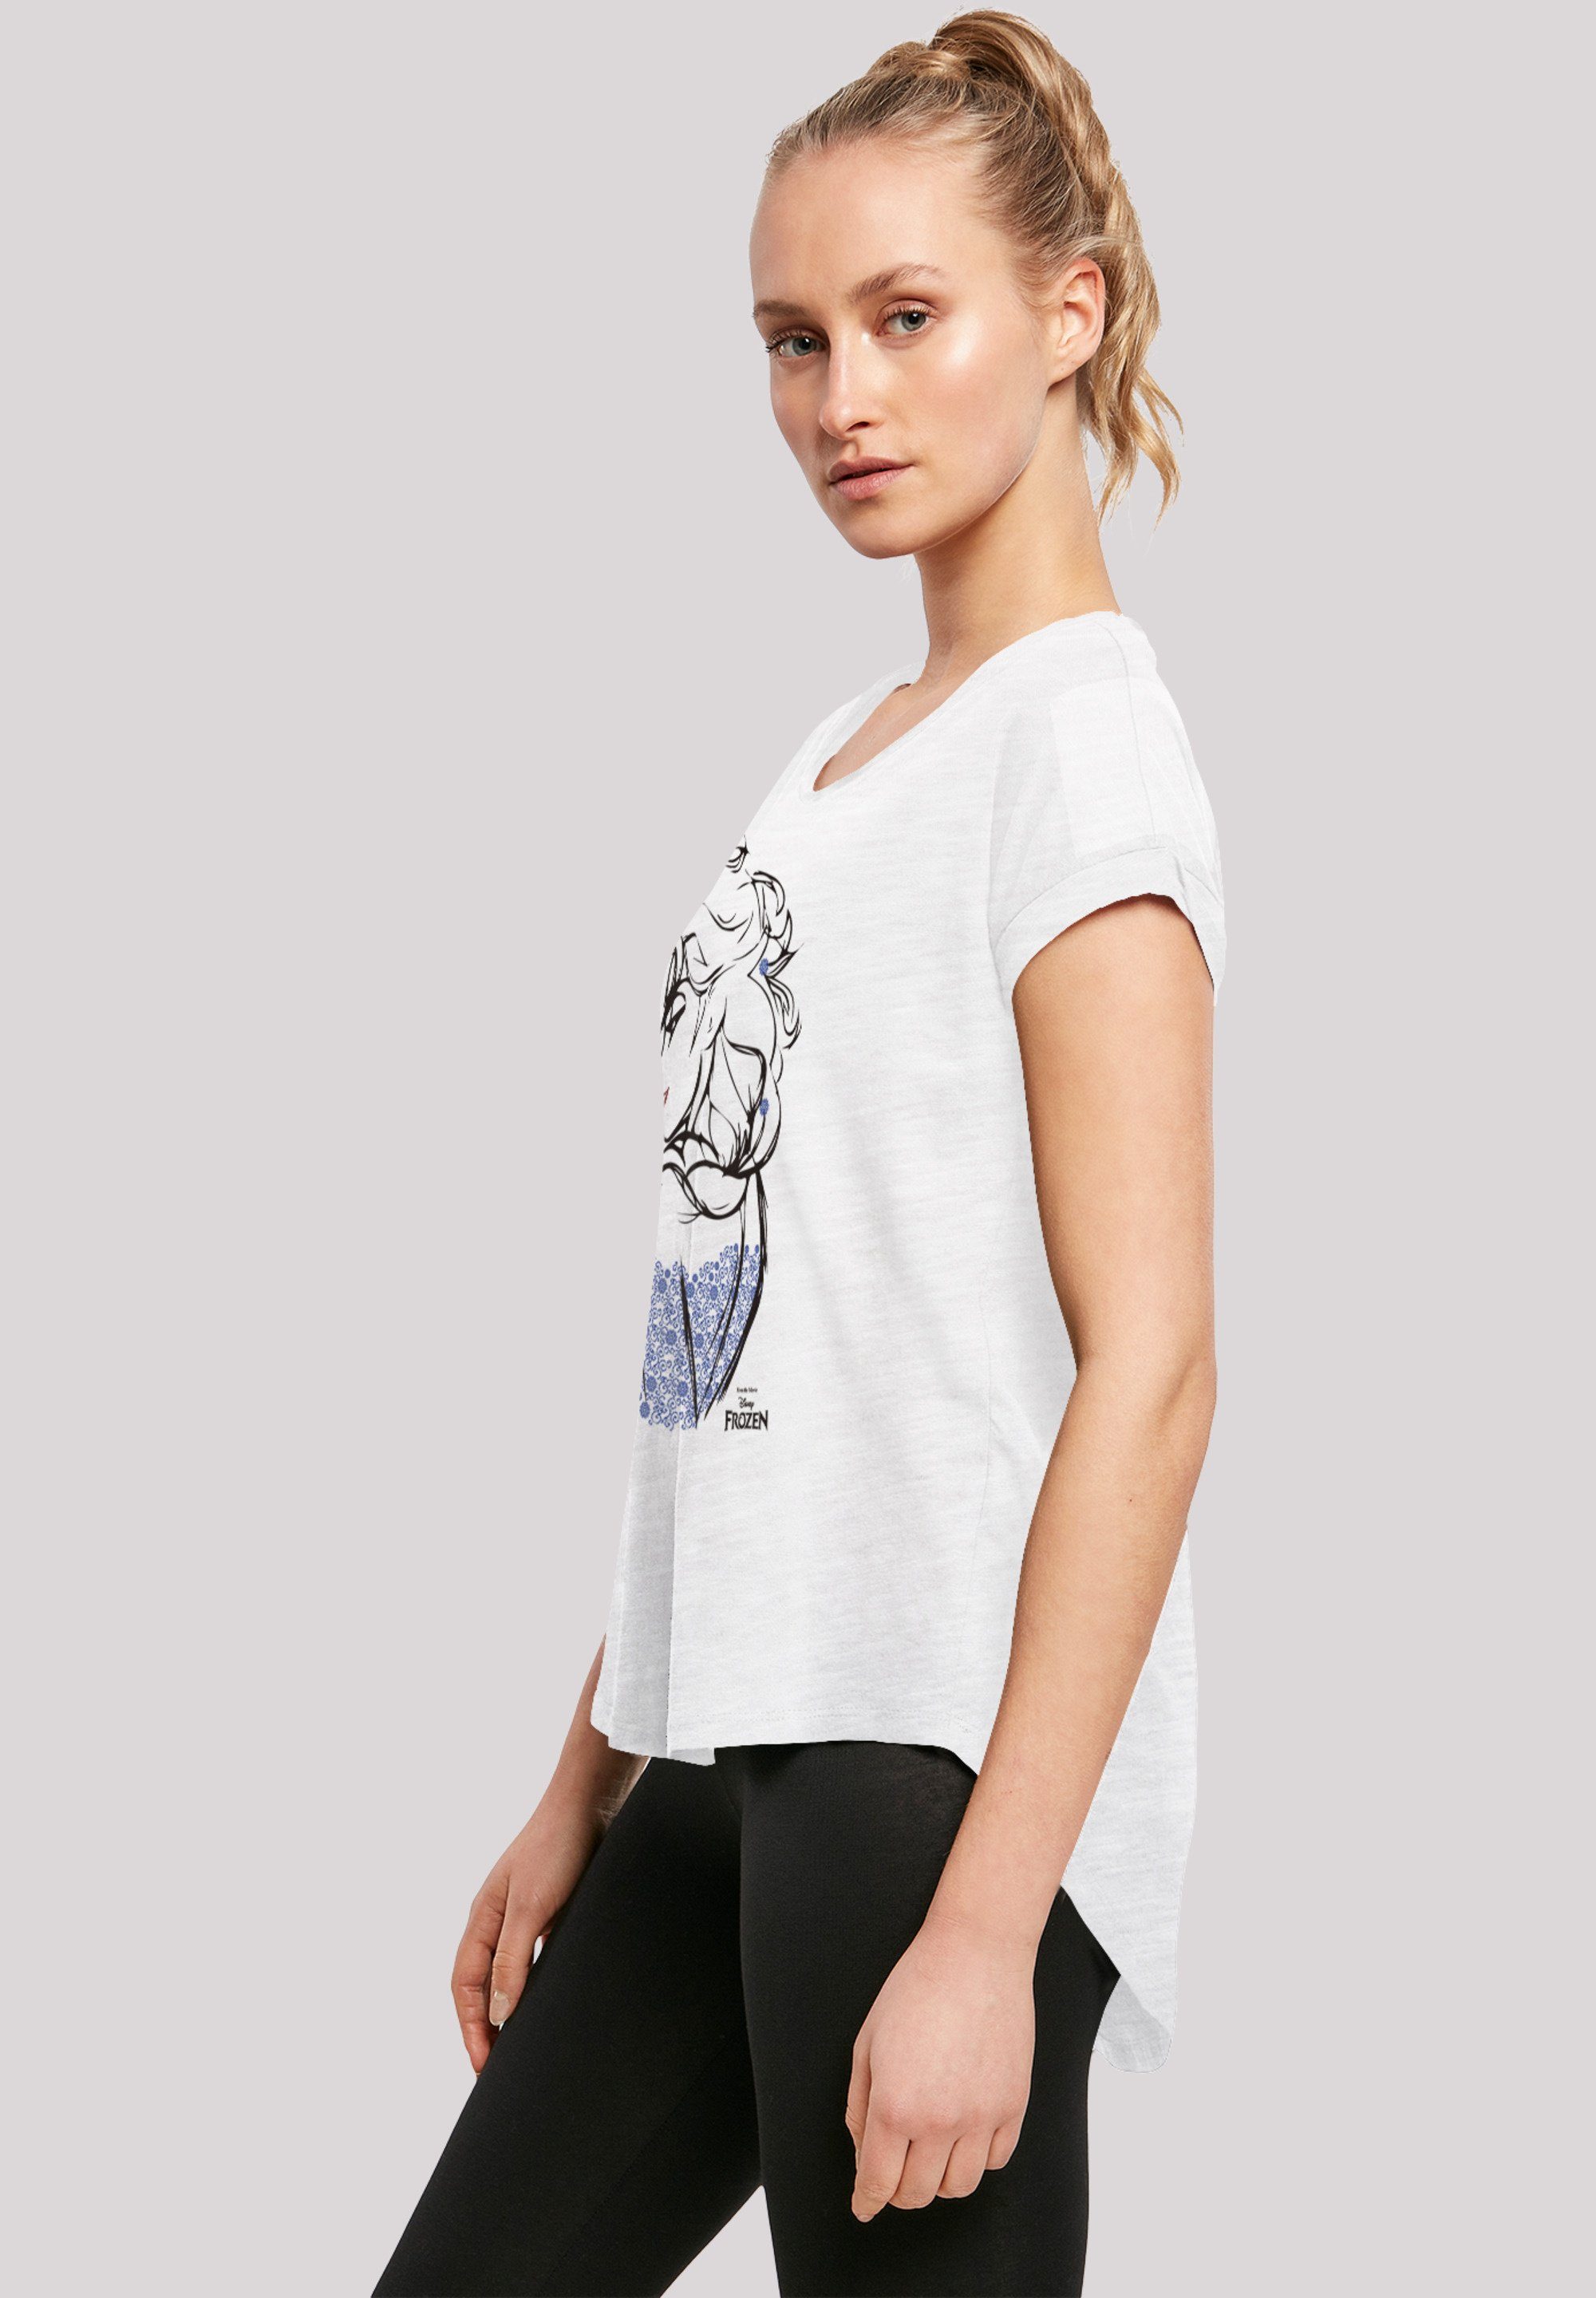 Print Frozen Mono Elsa T-Shirt Sketch F4NT4STIC